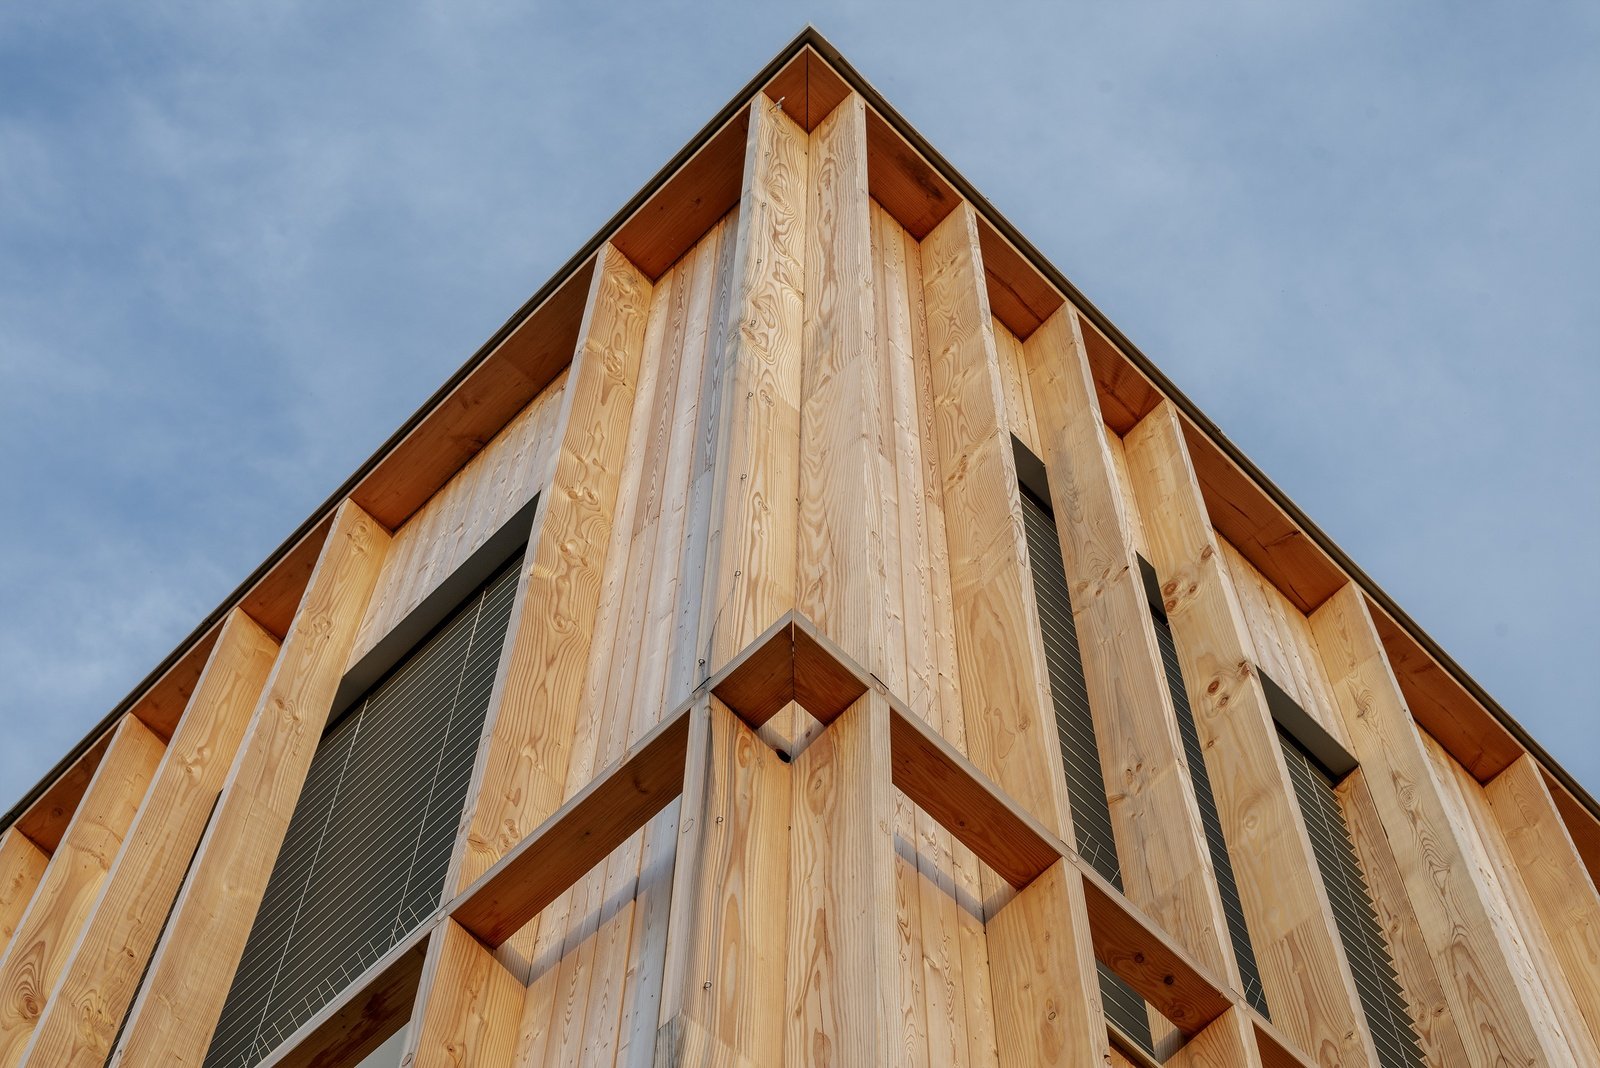 drevena hruba stavba z CLT paneholov, exterier osadzovanie velkych okien, zadny pohlad